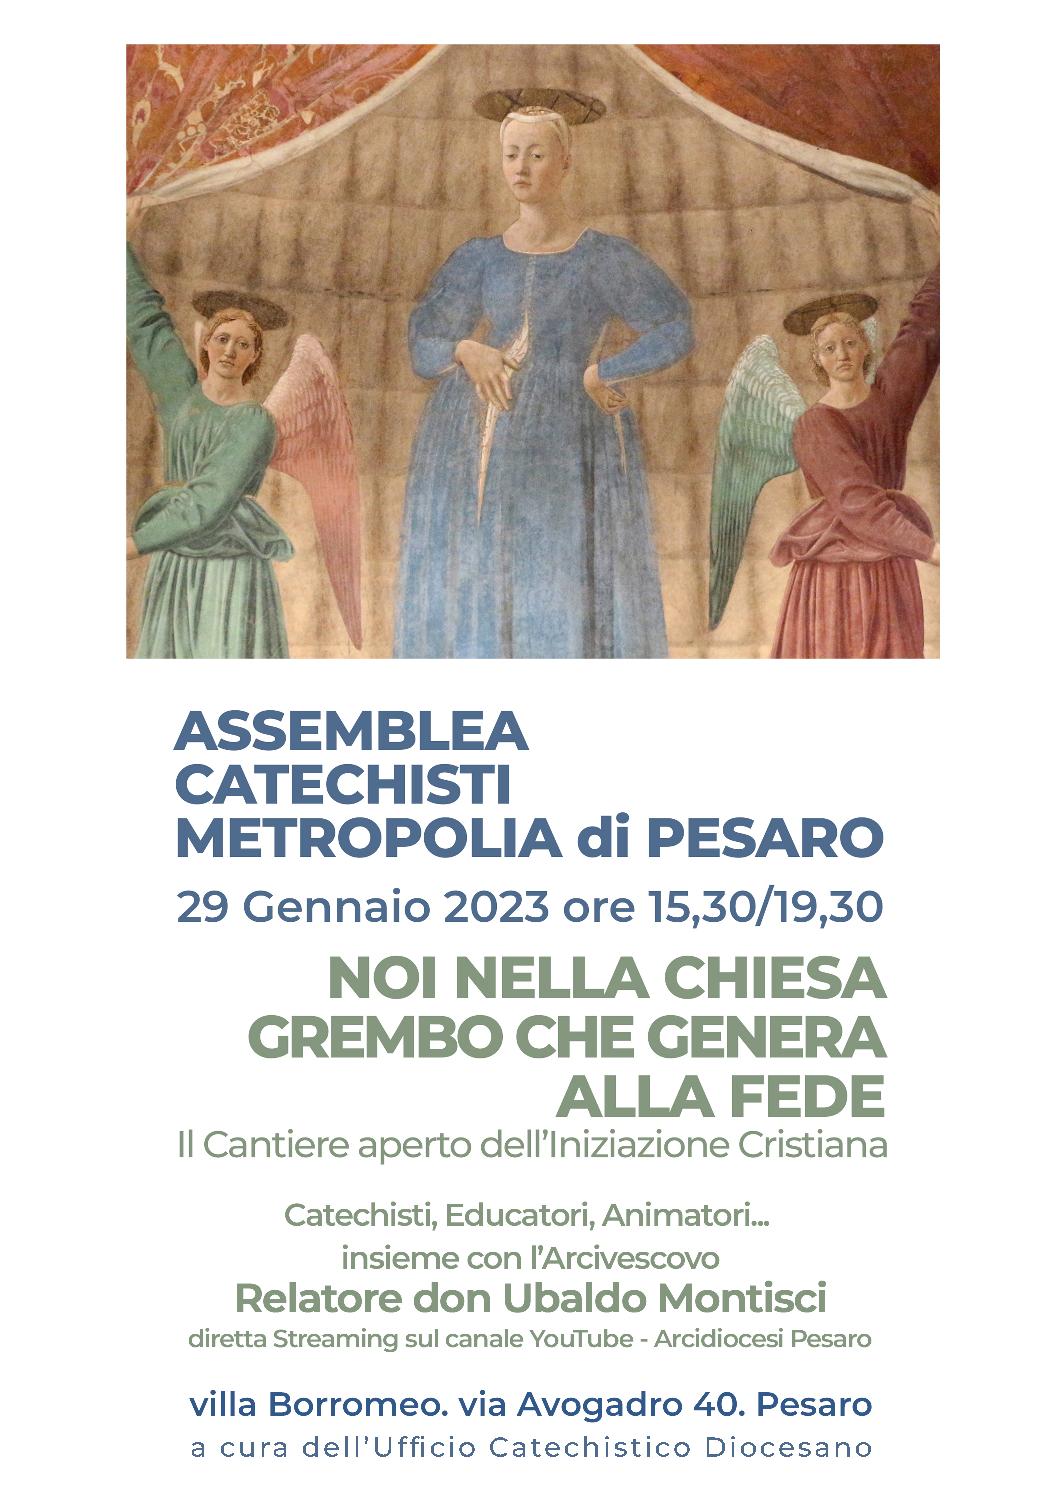 ASSEMBLEA CATECHISTI METROPOLIA DI PESARO – Villa Borromeo – 29 gennaio 2023 ore 15.30-19.30